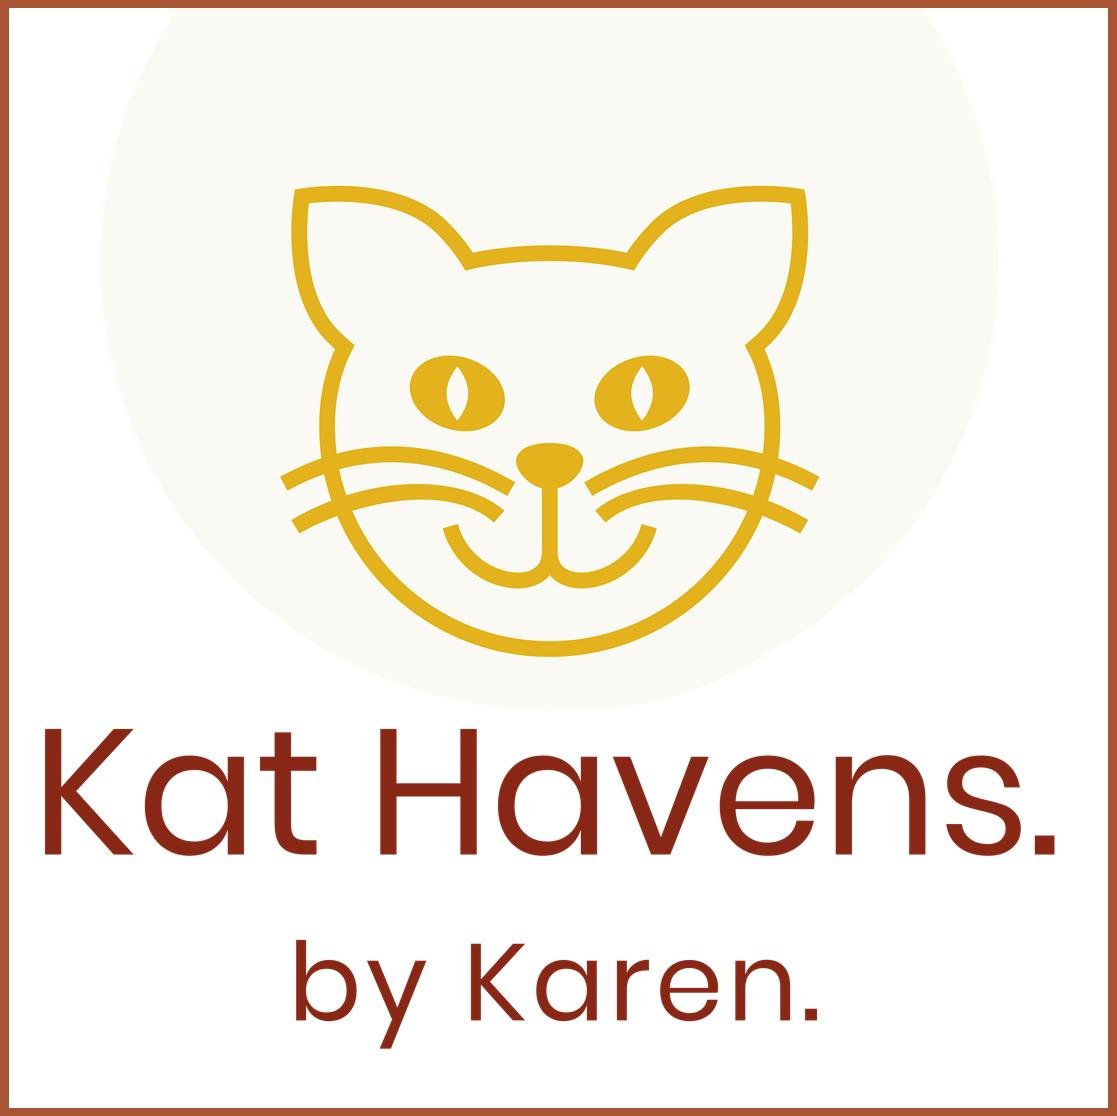 Kat Havens by Karen